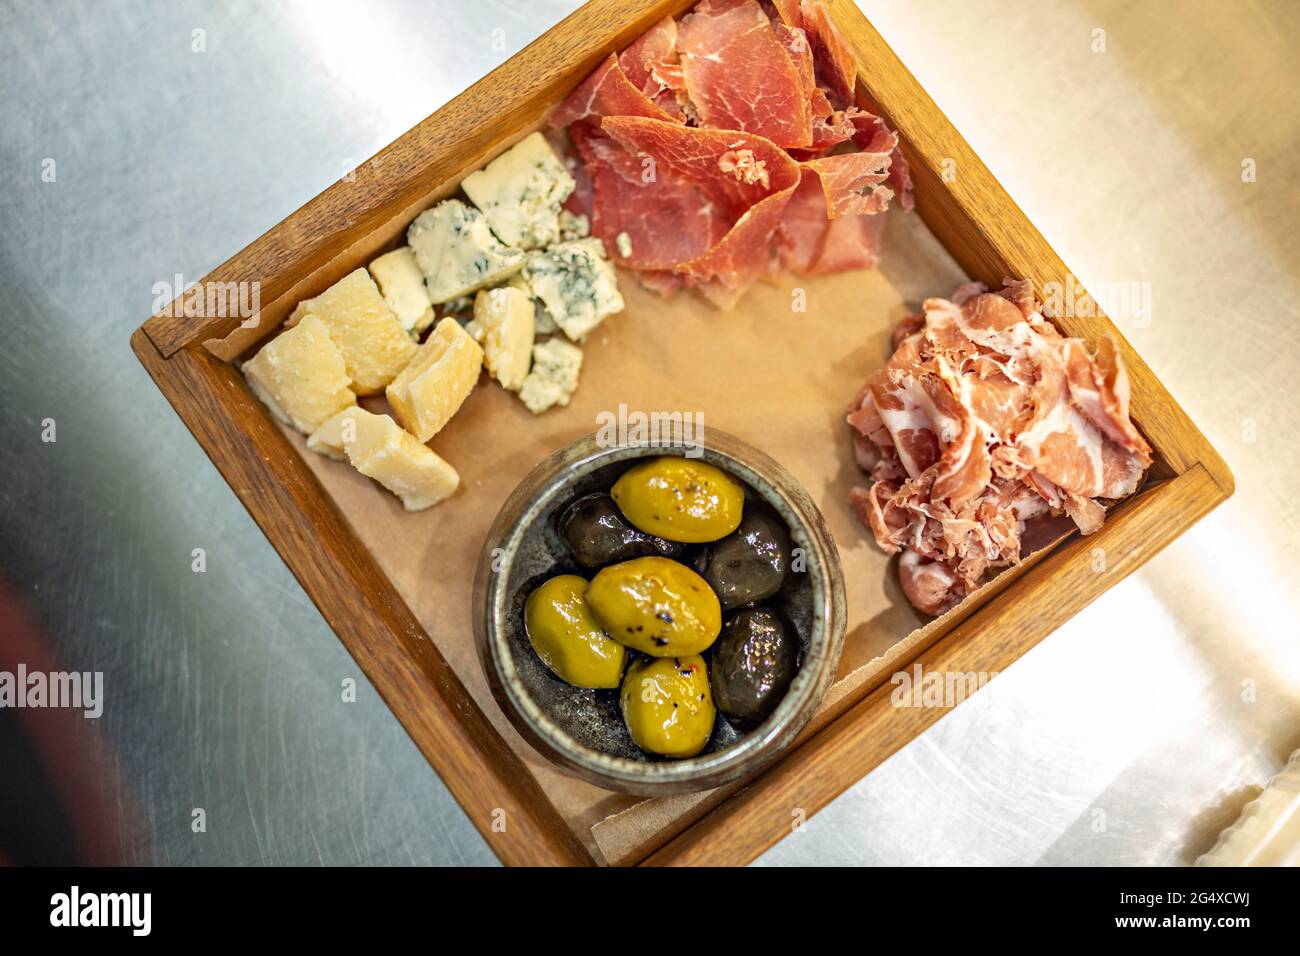 Olive verte et noire servie avec de la viande rouge et du fromage dans un plateau en bois Banque D'Images